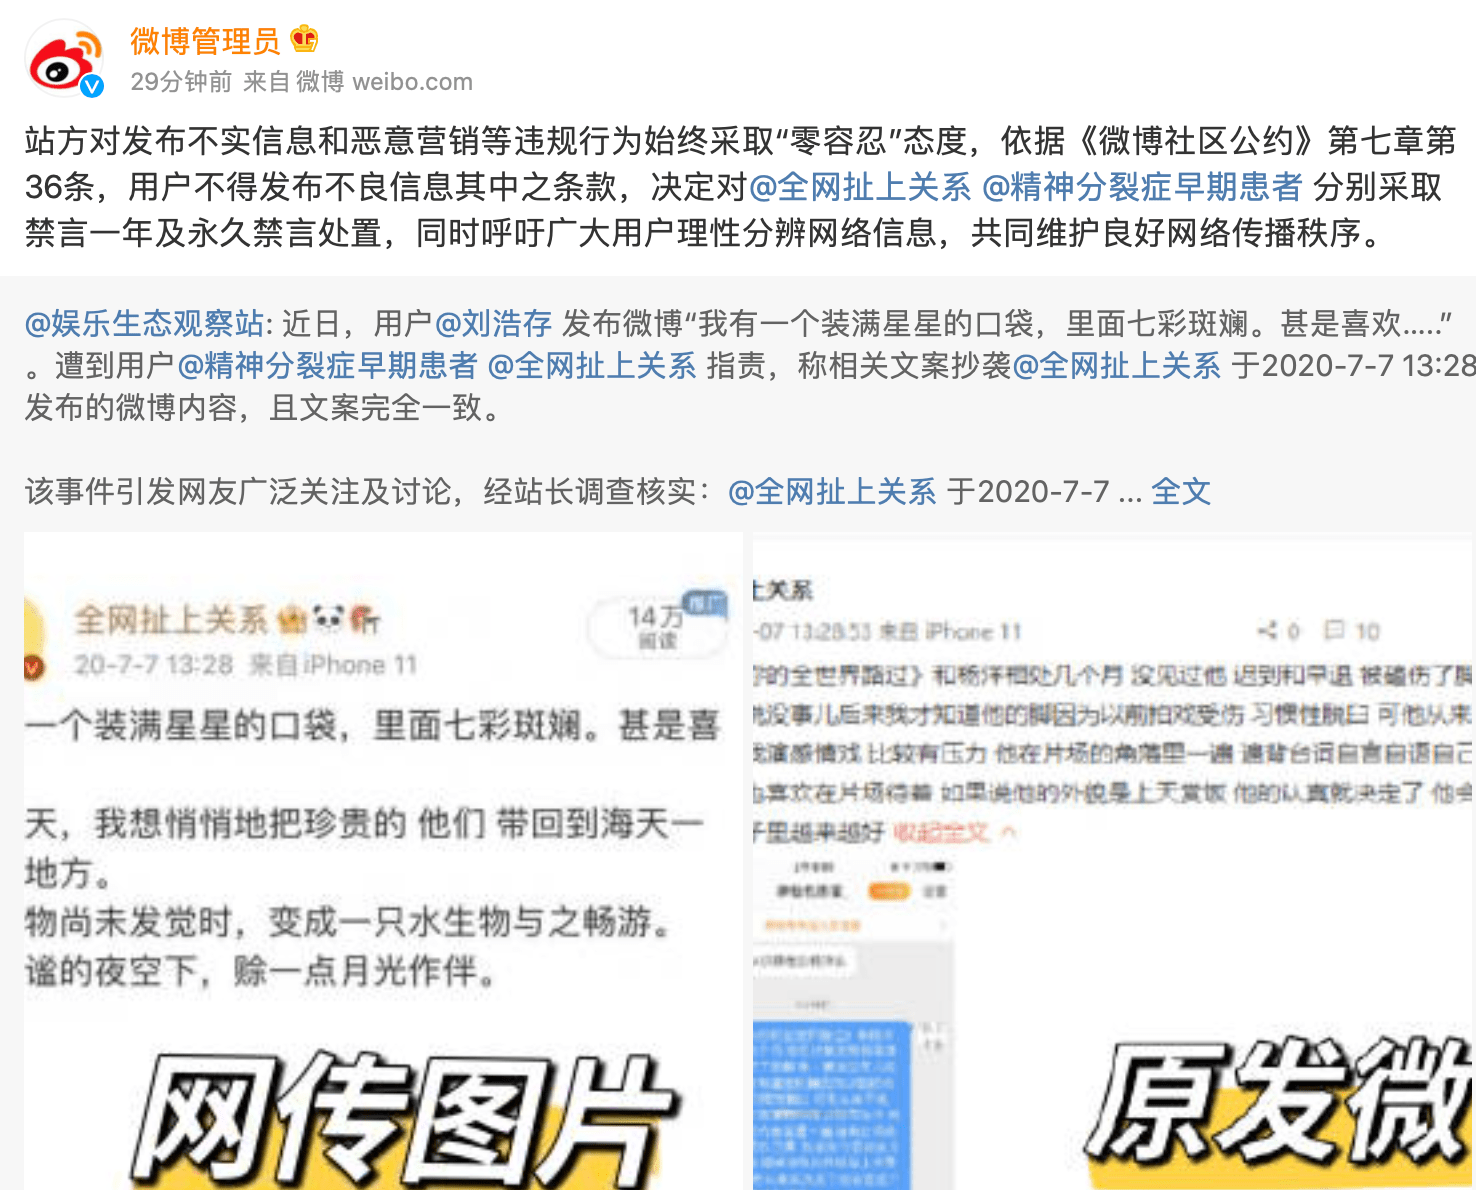 微博对造谣刘浩存抄袭用户采取禁言处置